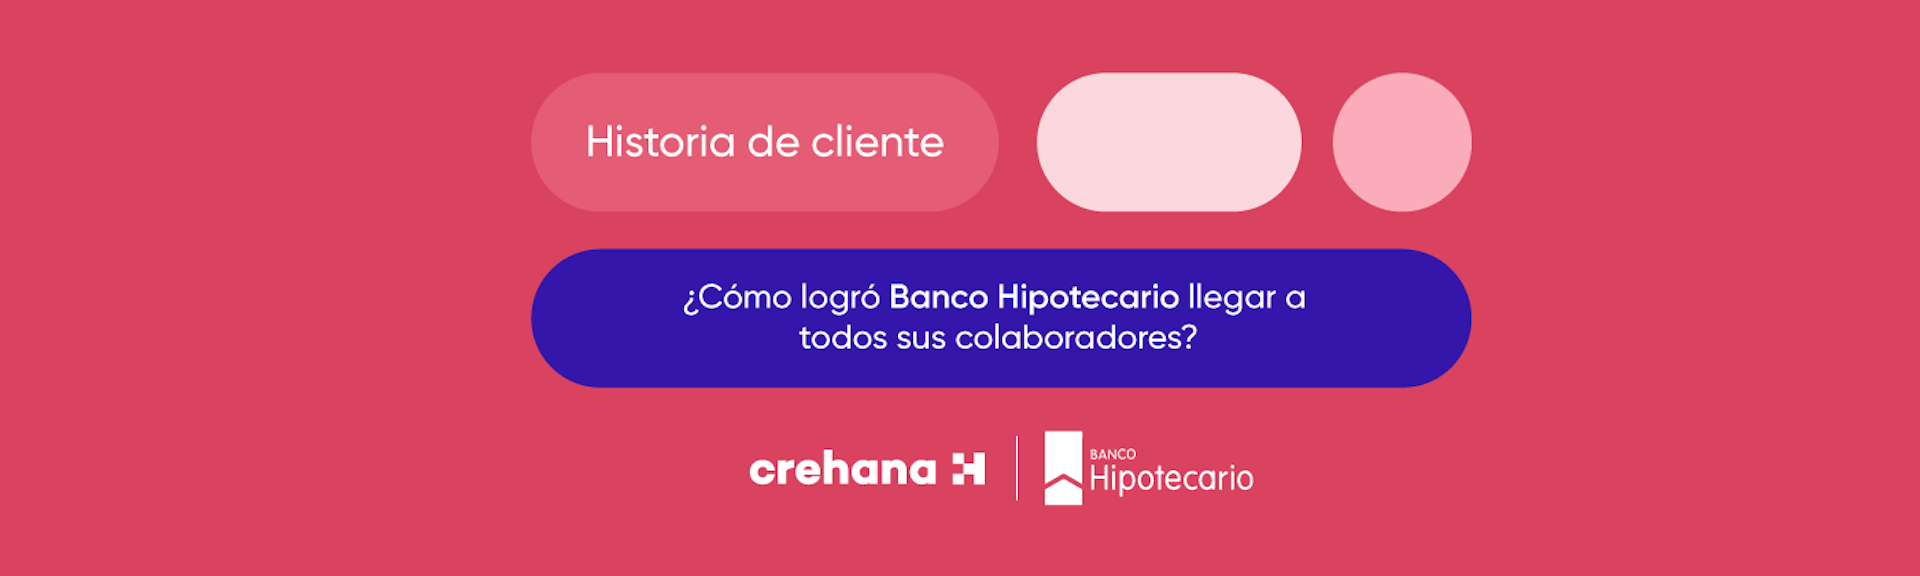 ¿Cómo logró el Banco Hipotecario llegar a todos sus colaboradores a través de Crehana?